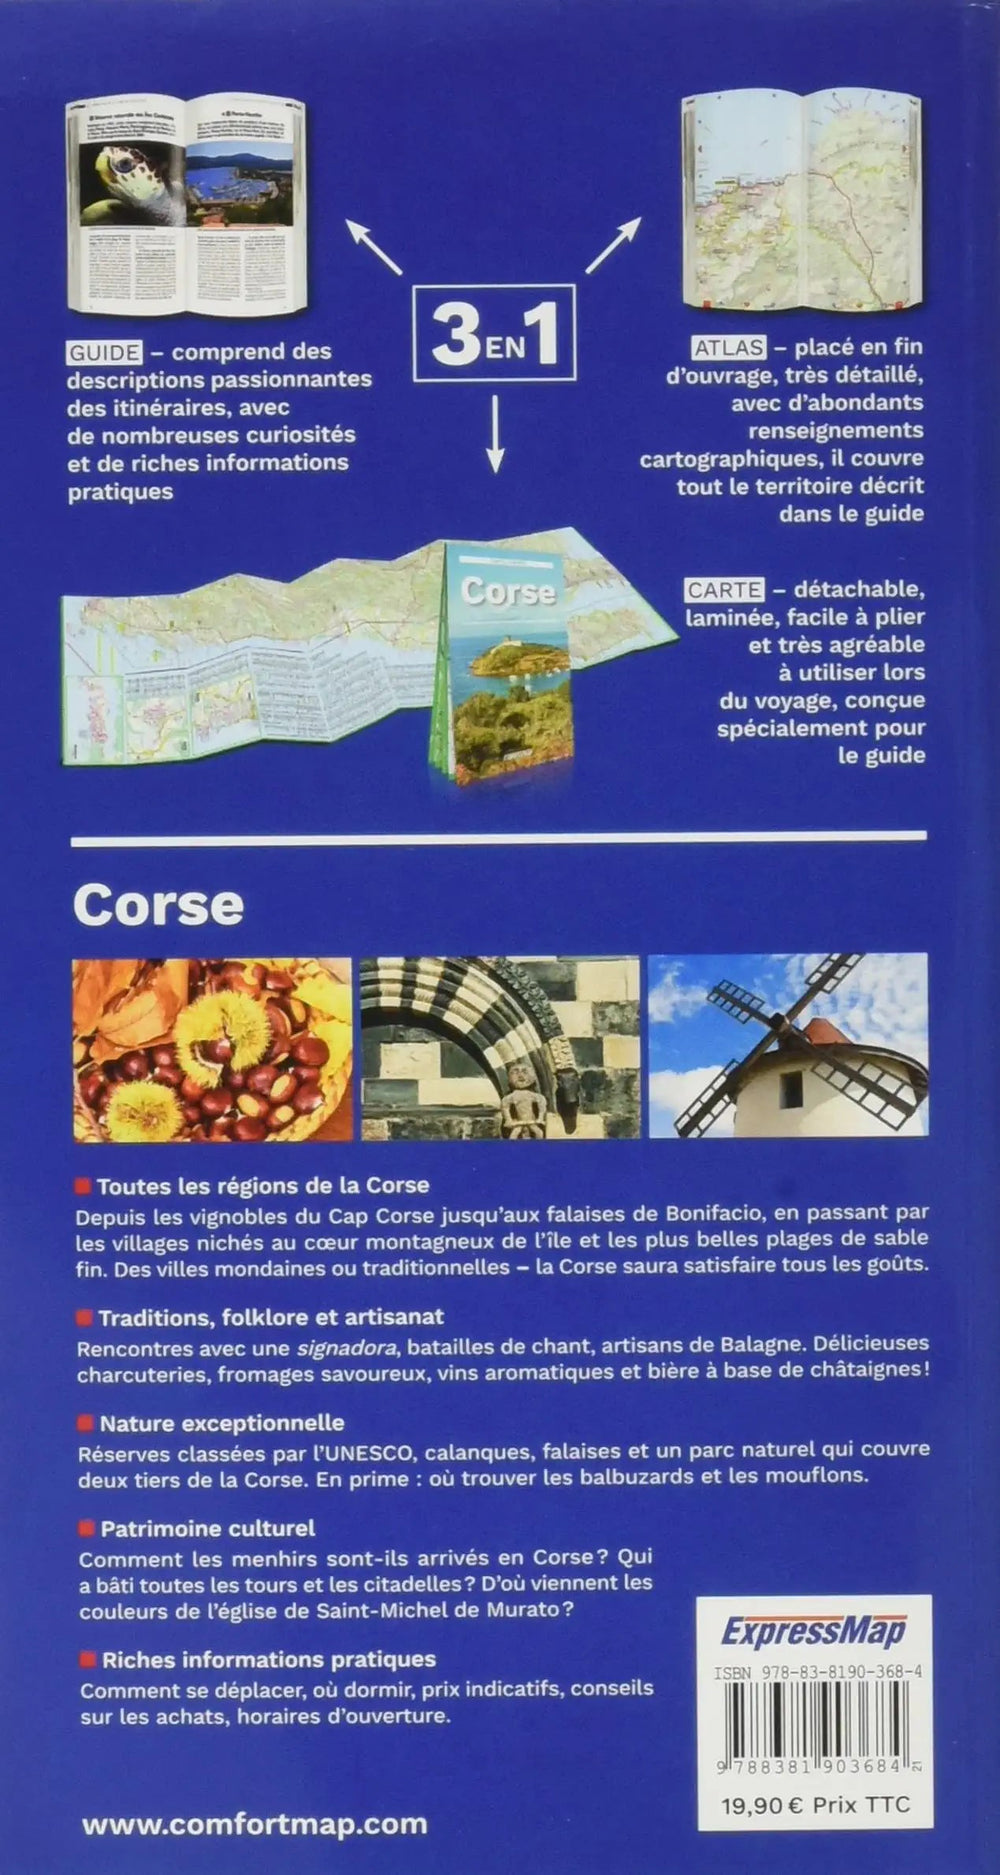 Guide, Atlas & carte routière - Corse | Express Map carte pliée Express Map 